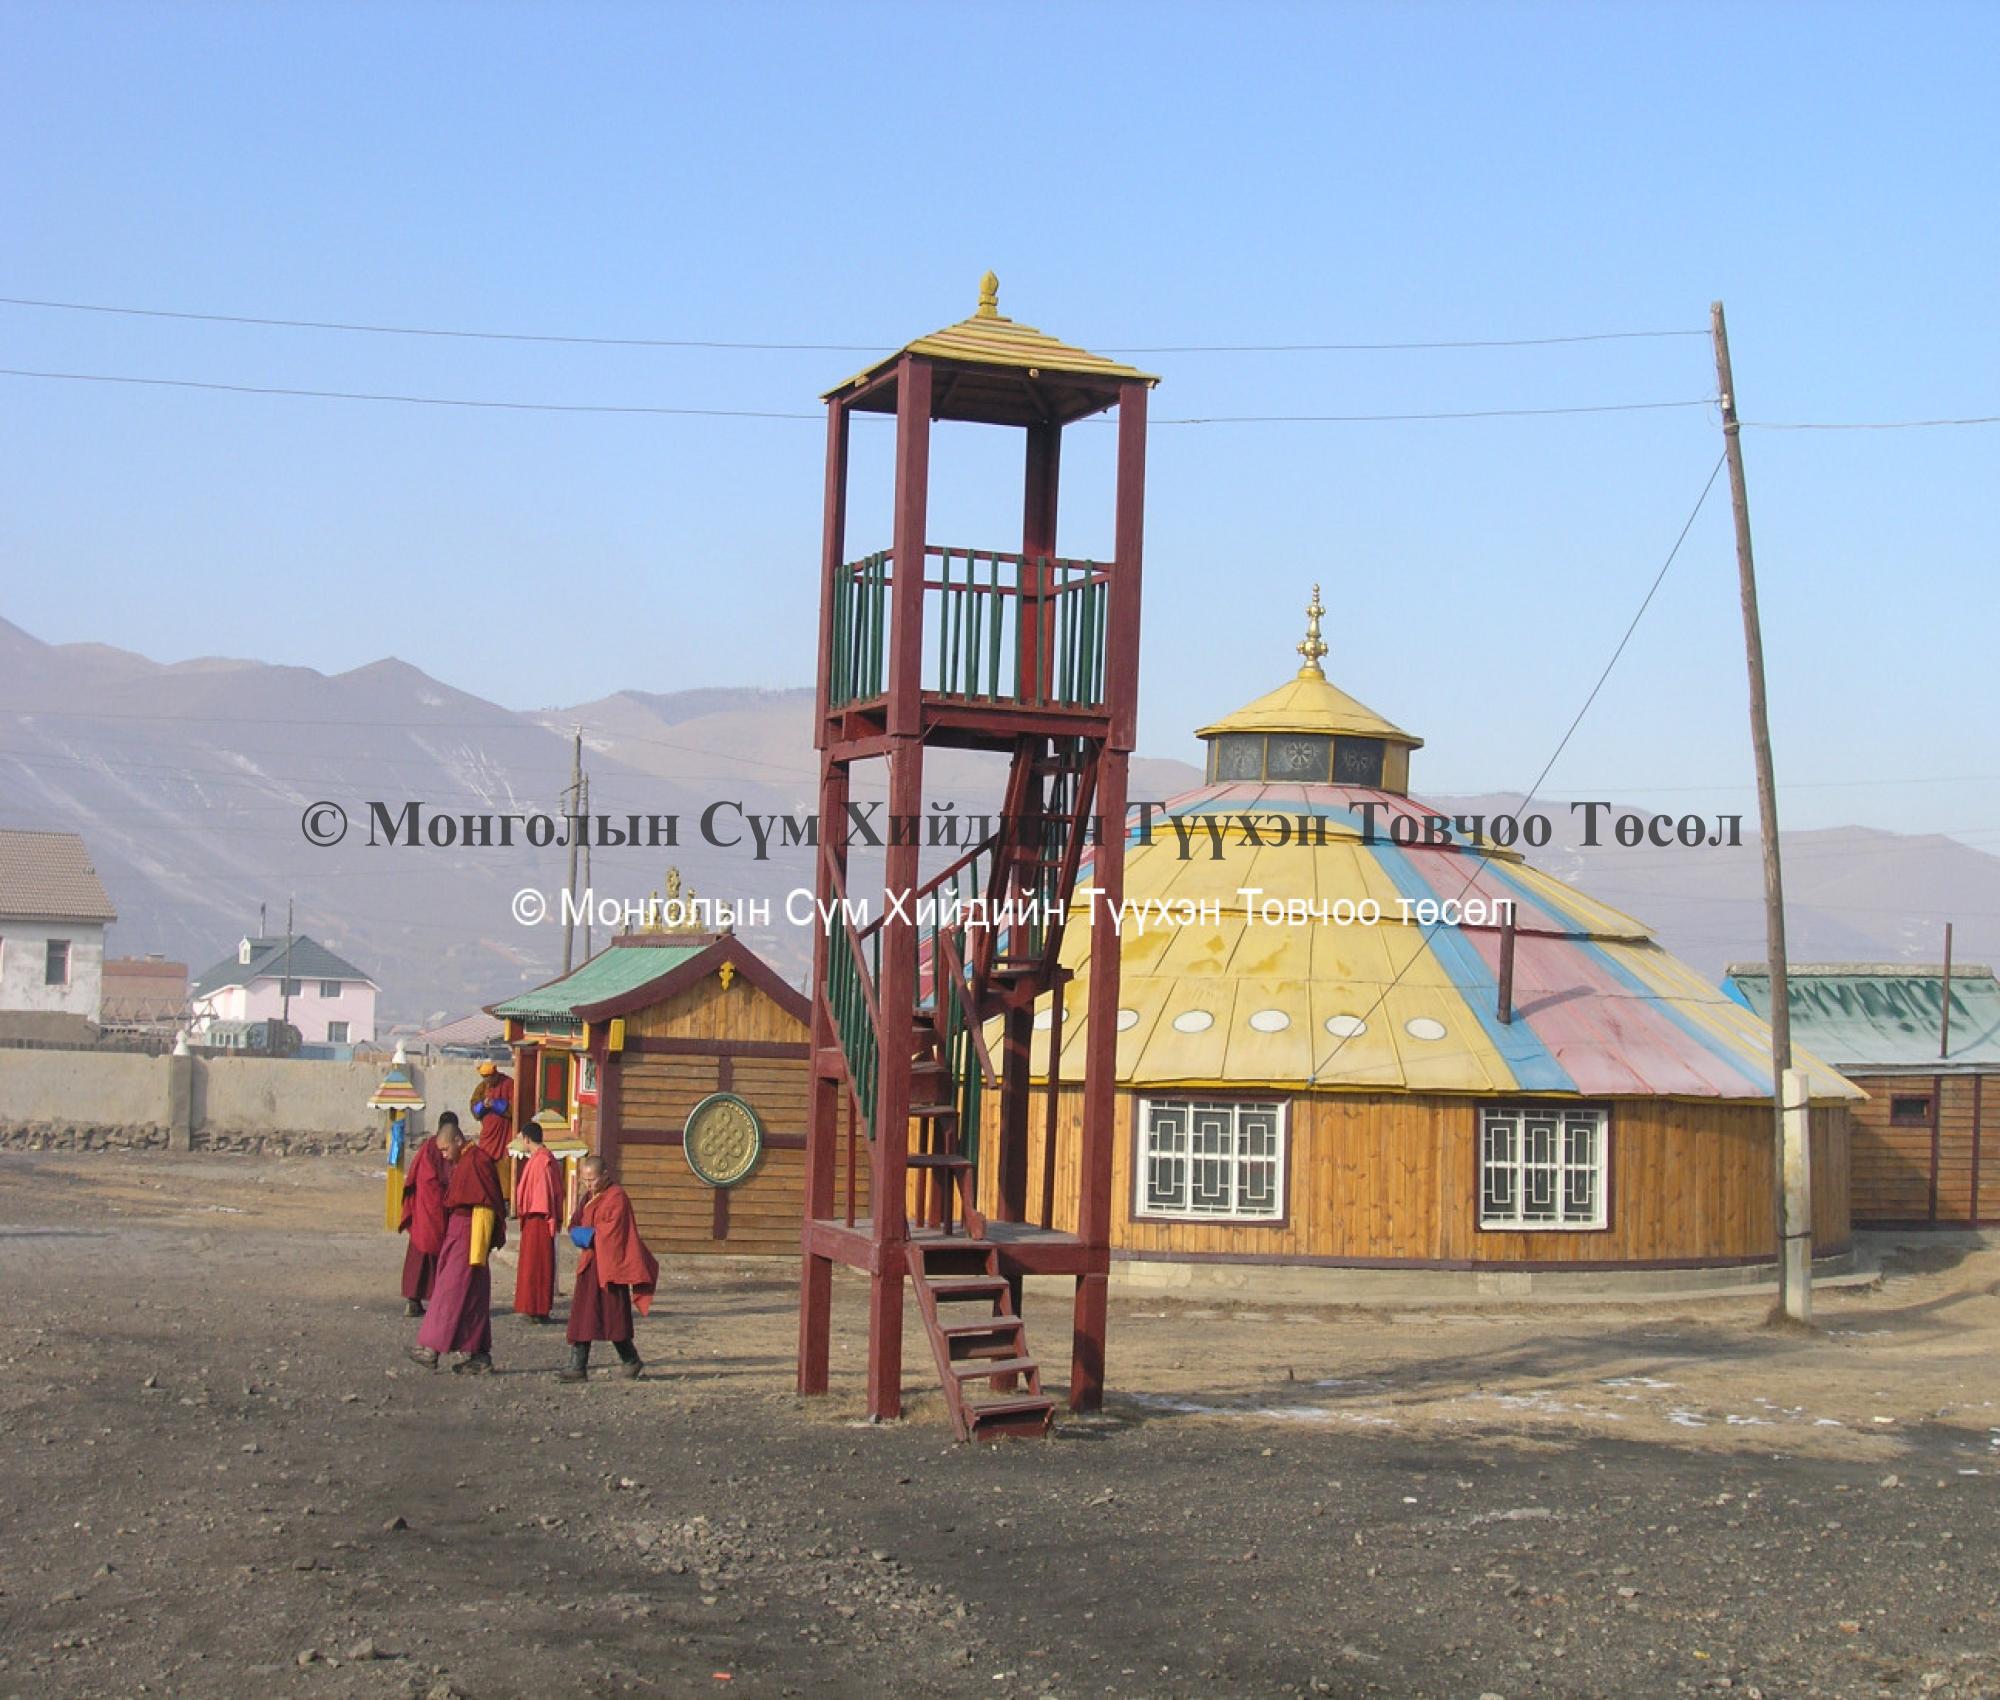 Platform calling monks for ceremonies